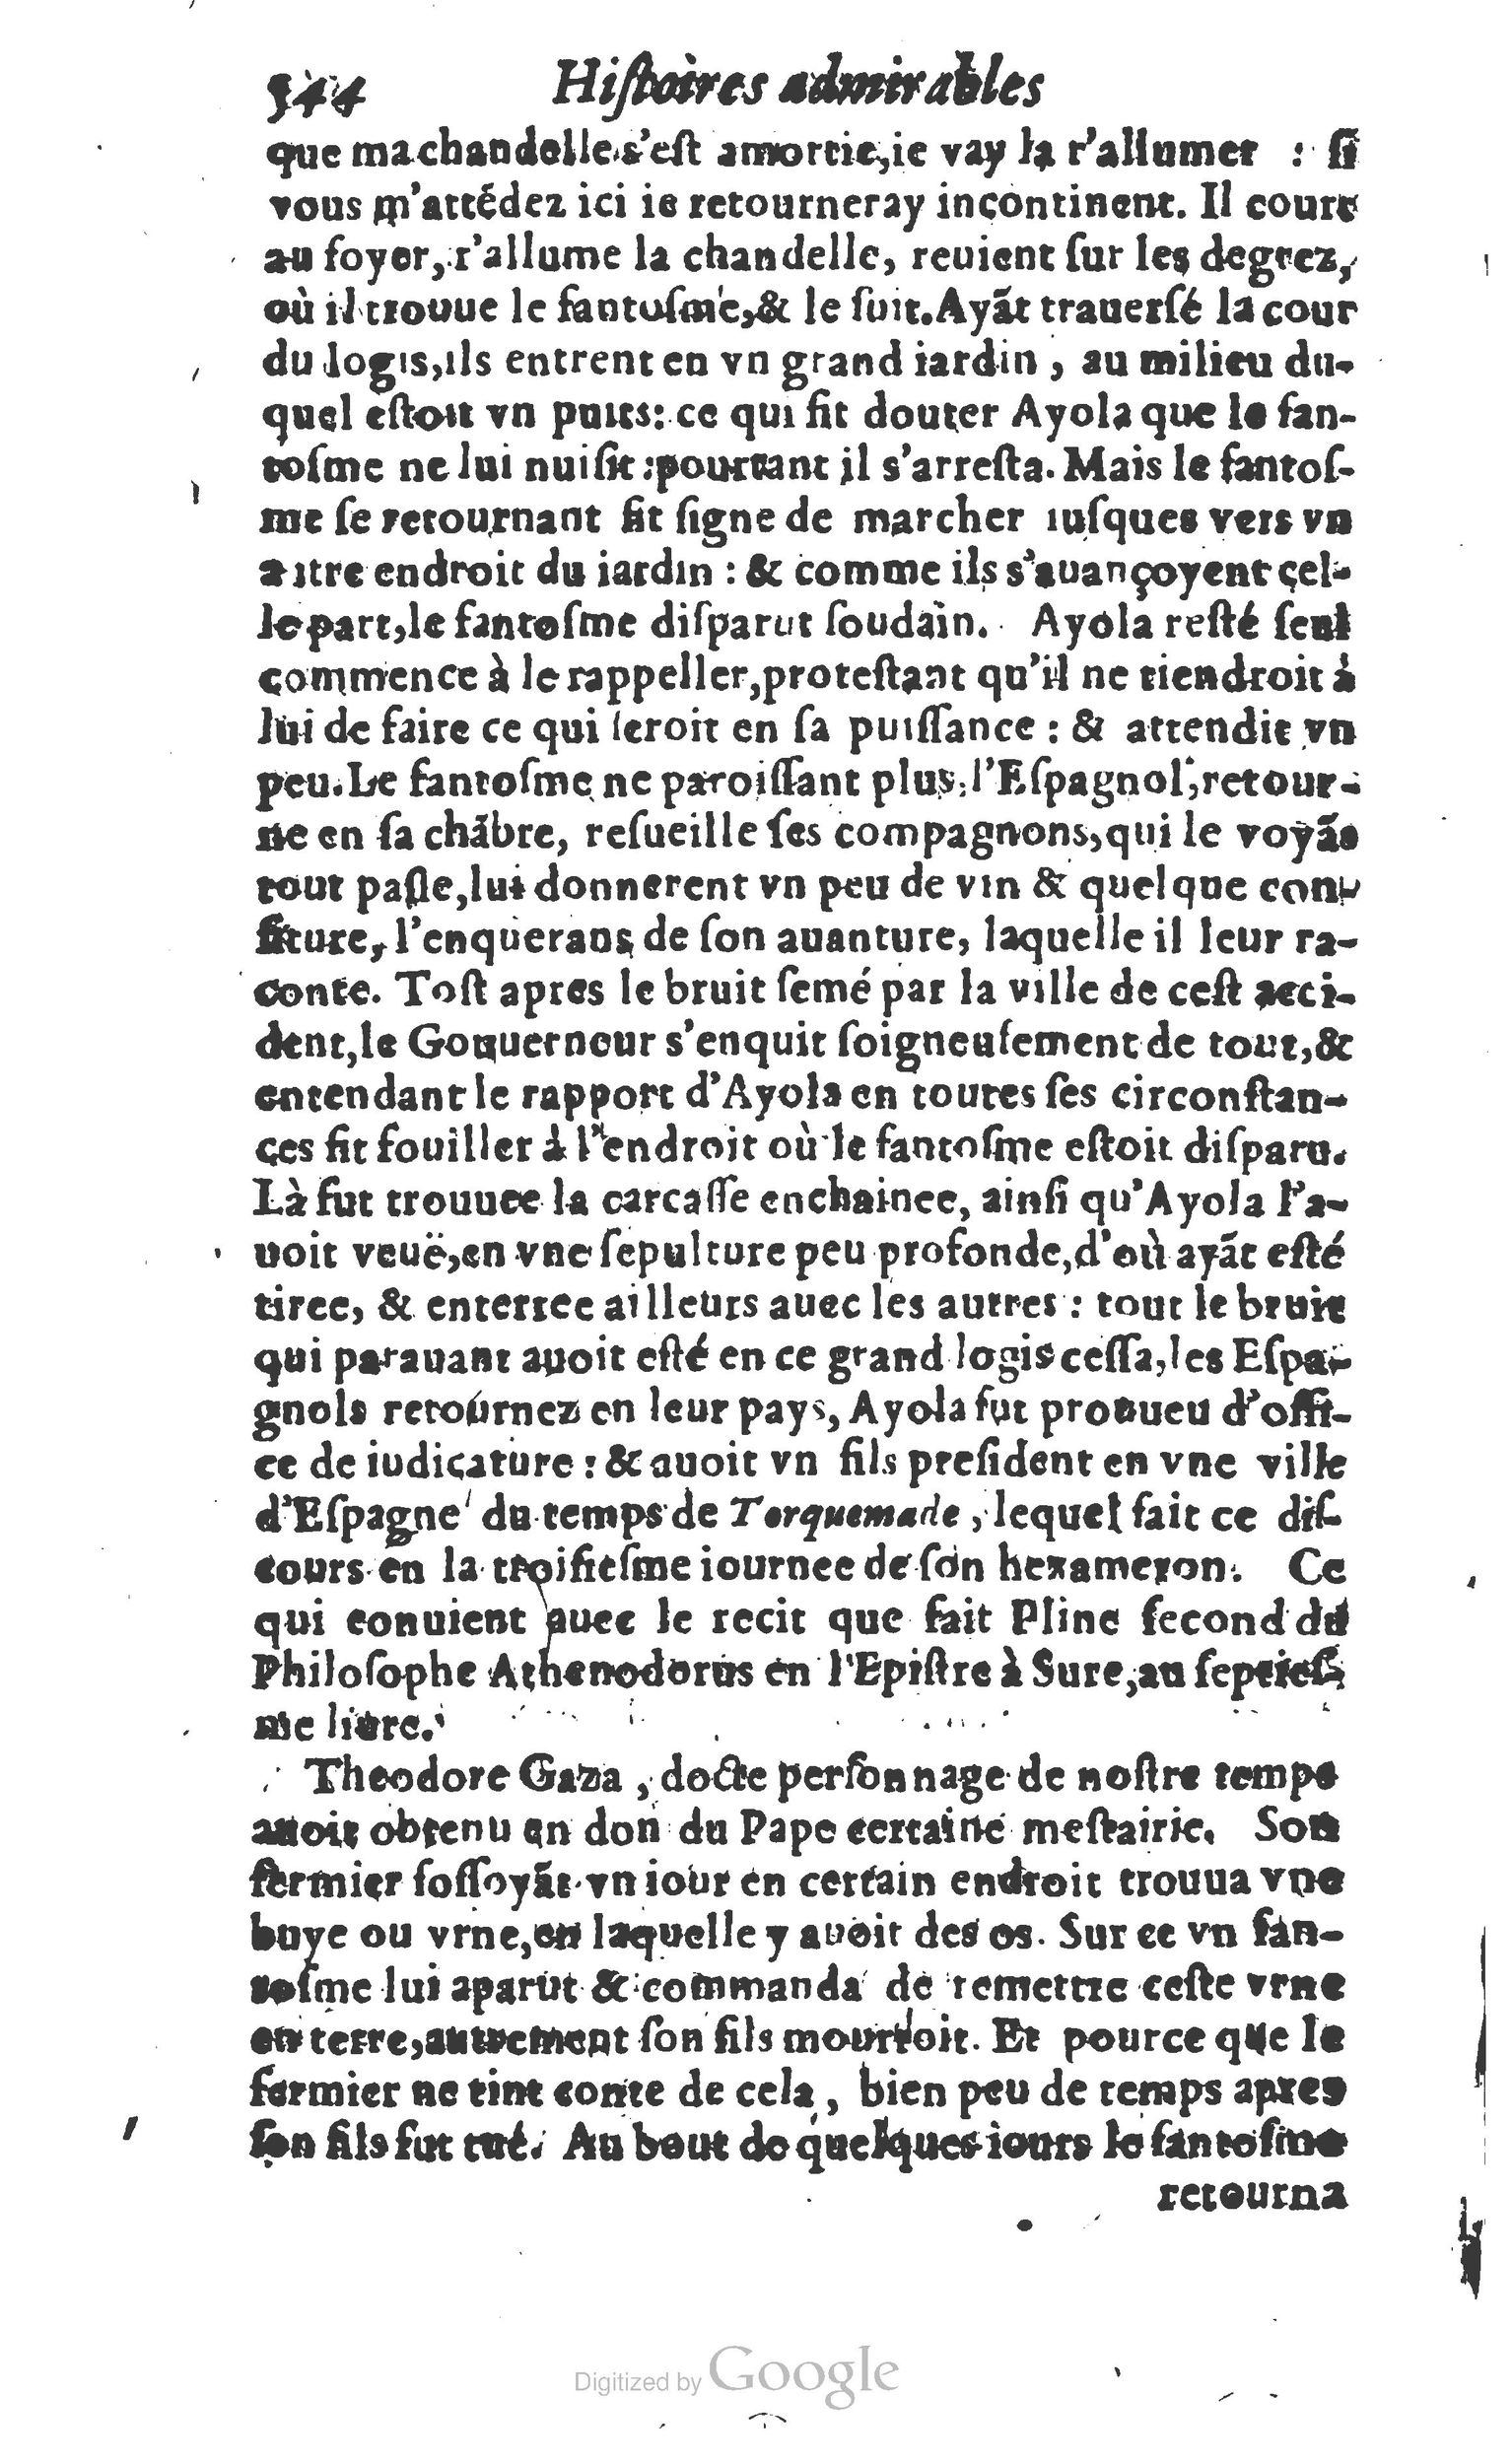 1610 Trésor d’histoires admirables et mémorables de nostre temps Marceau Princeton_Page_0565.jpg